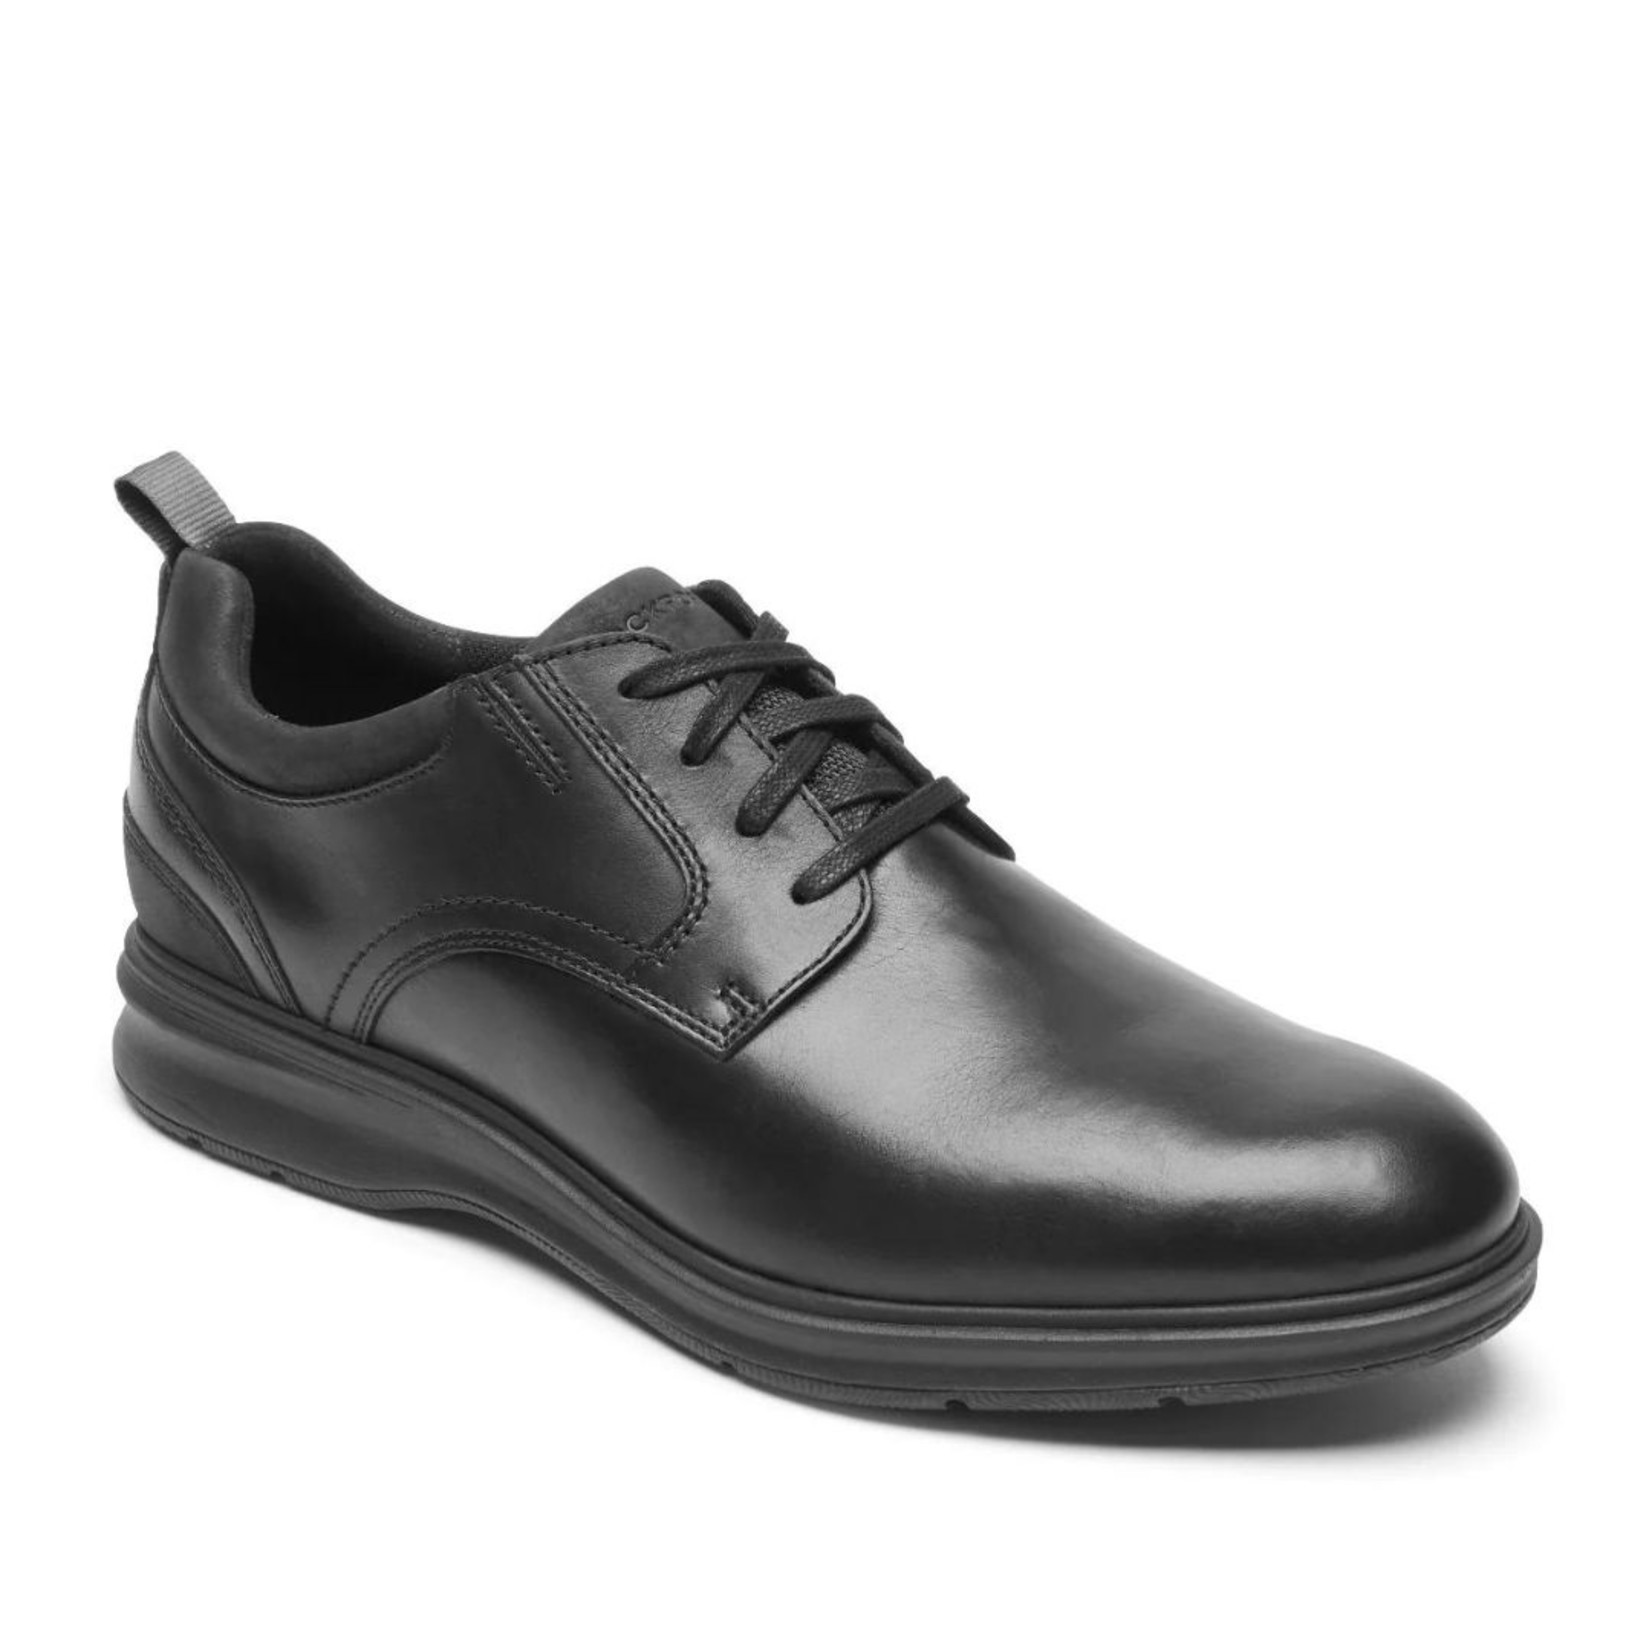 Rockport Rockport TM City Plain Toe Men's Dress Shoes